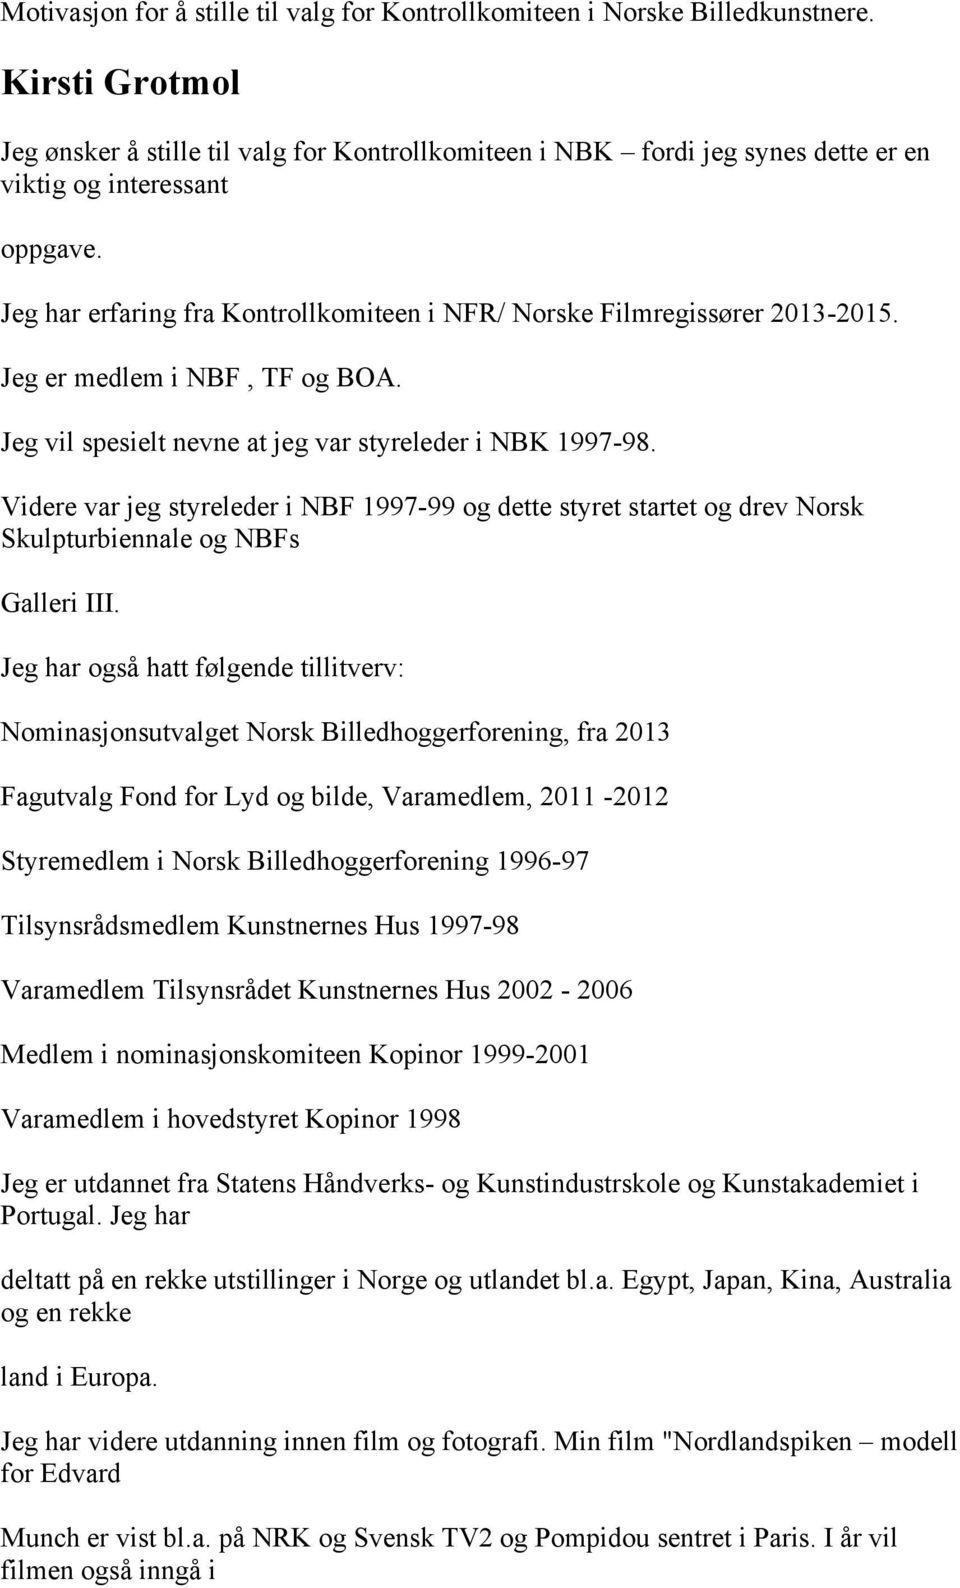 Jeg har erfaring fra Kontrollkomiteen i NFR/ Norske Filmregissører 2013-2015. Jeg er medlem i NBF, TF og BOA. Jeg vil spesielt nevne at jeg var styreleder i NBK 1997-98.